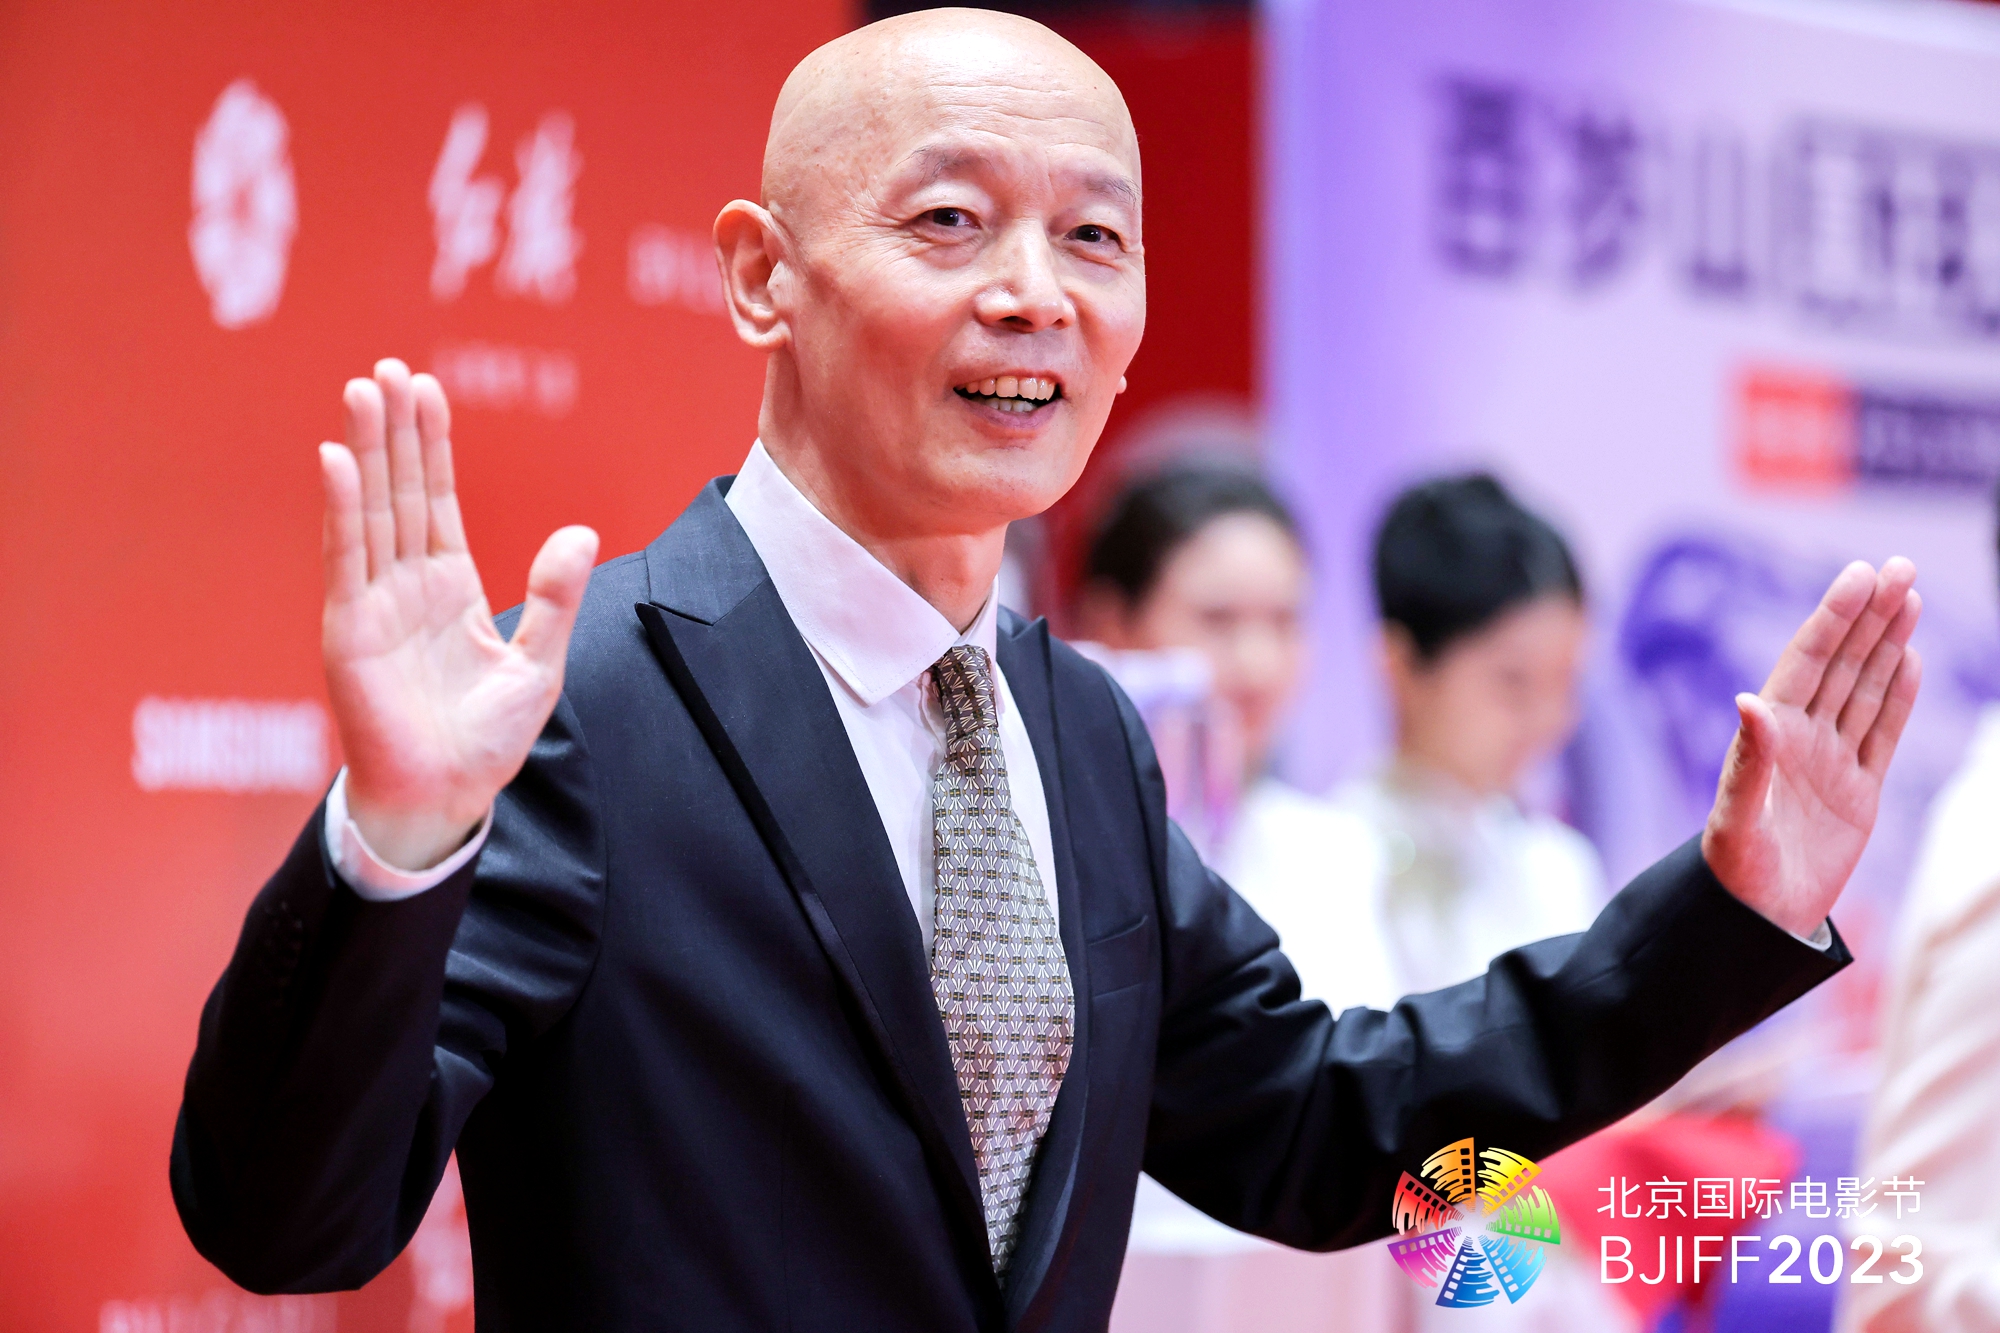 Ge You, uno de los actores de comedia más populares de China, posa para una foto en la alfombra roja durante la ceremonia de clausura del 13° Festival Internacional de Cine de Beijing.  / BJIFF